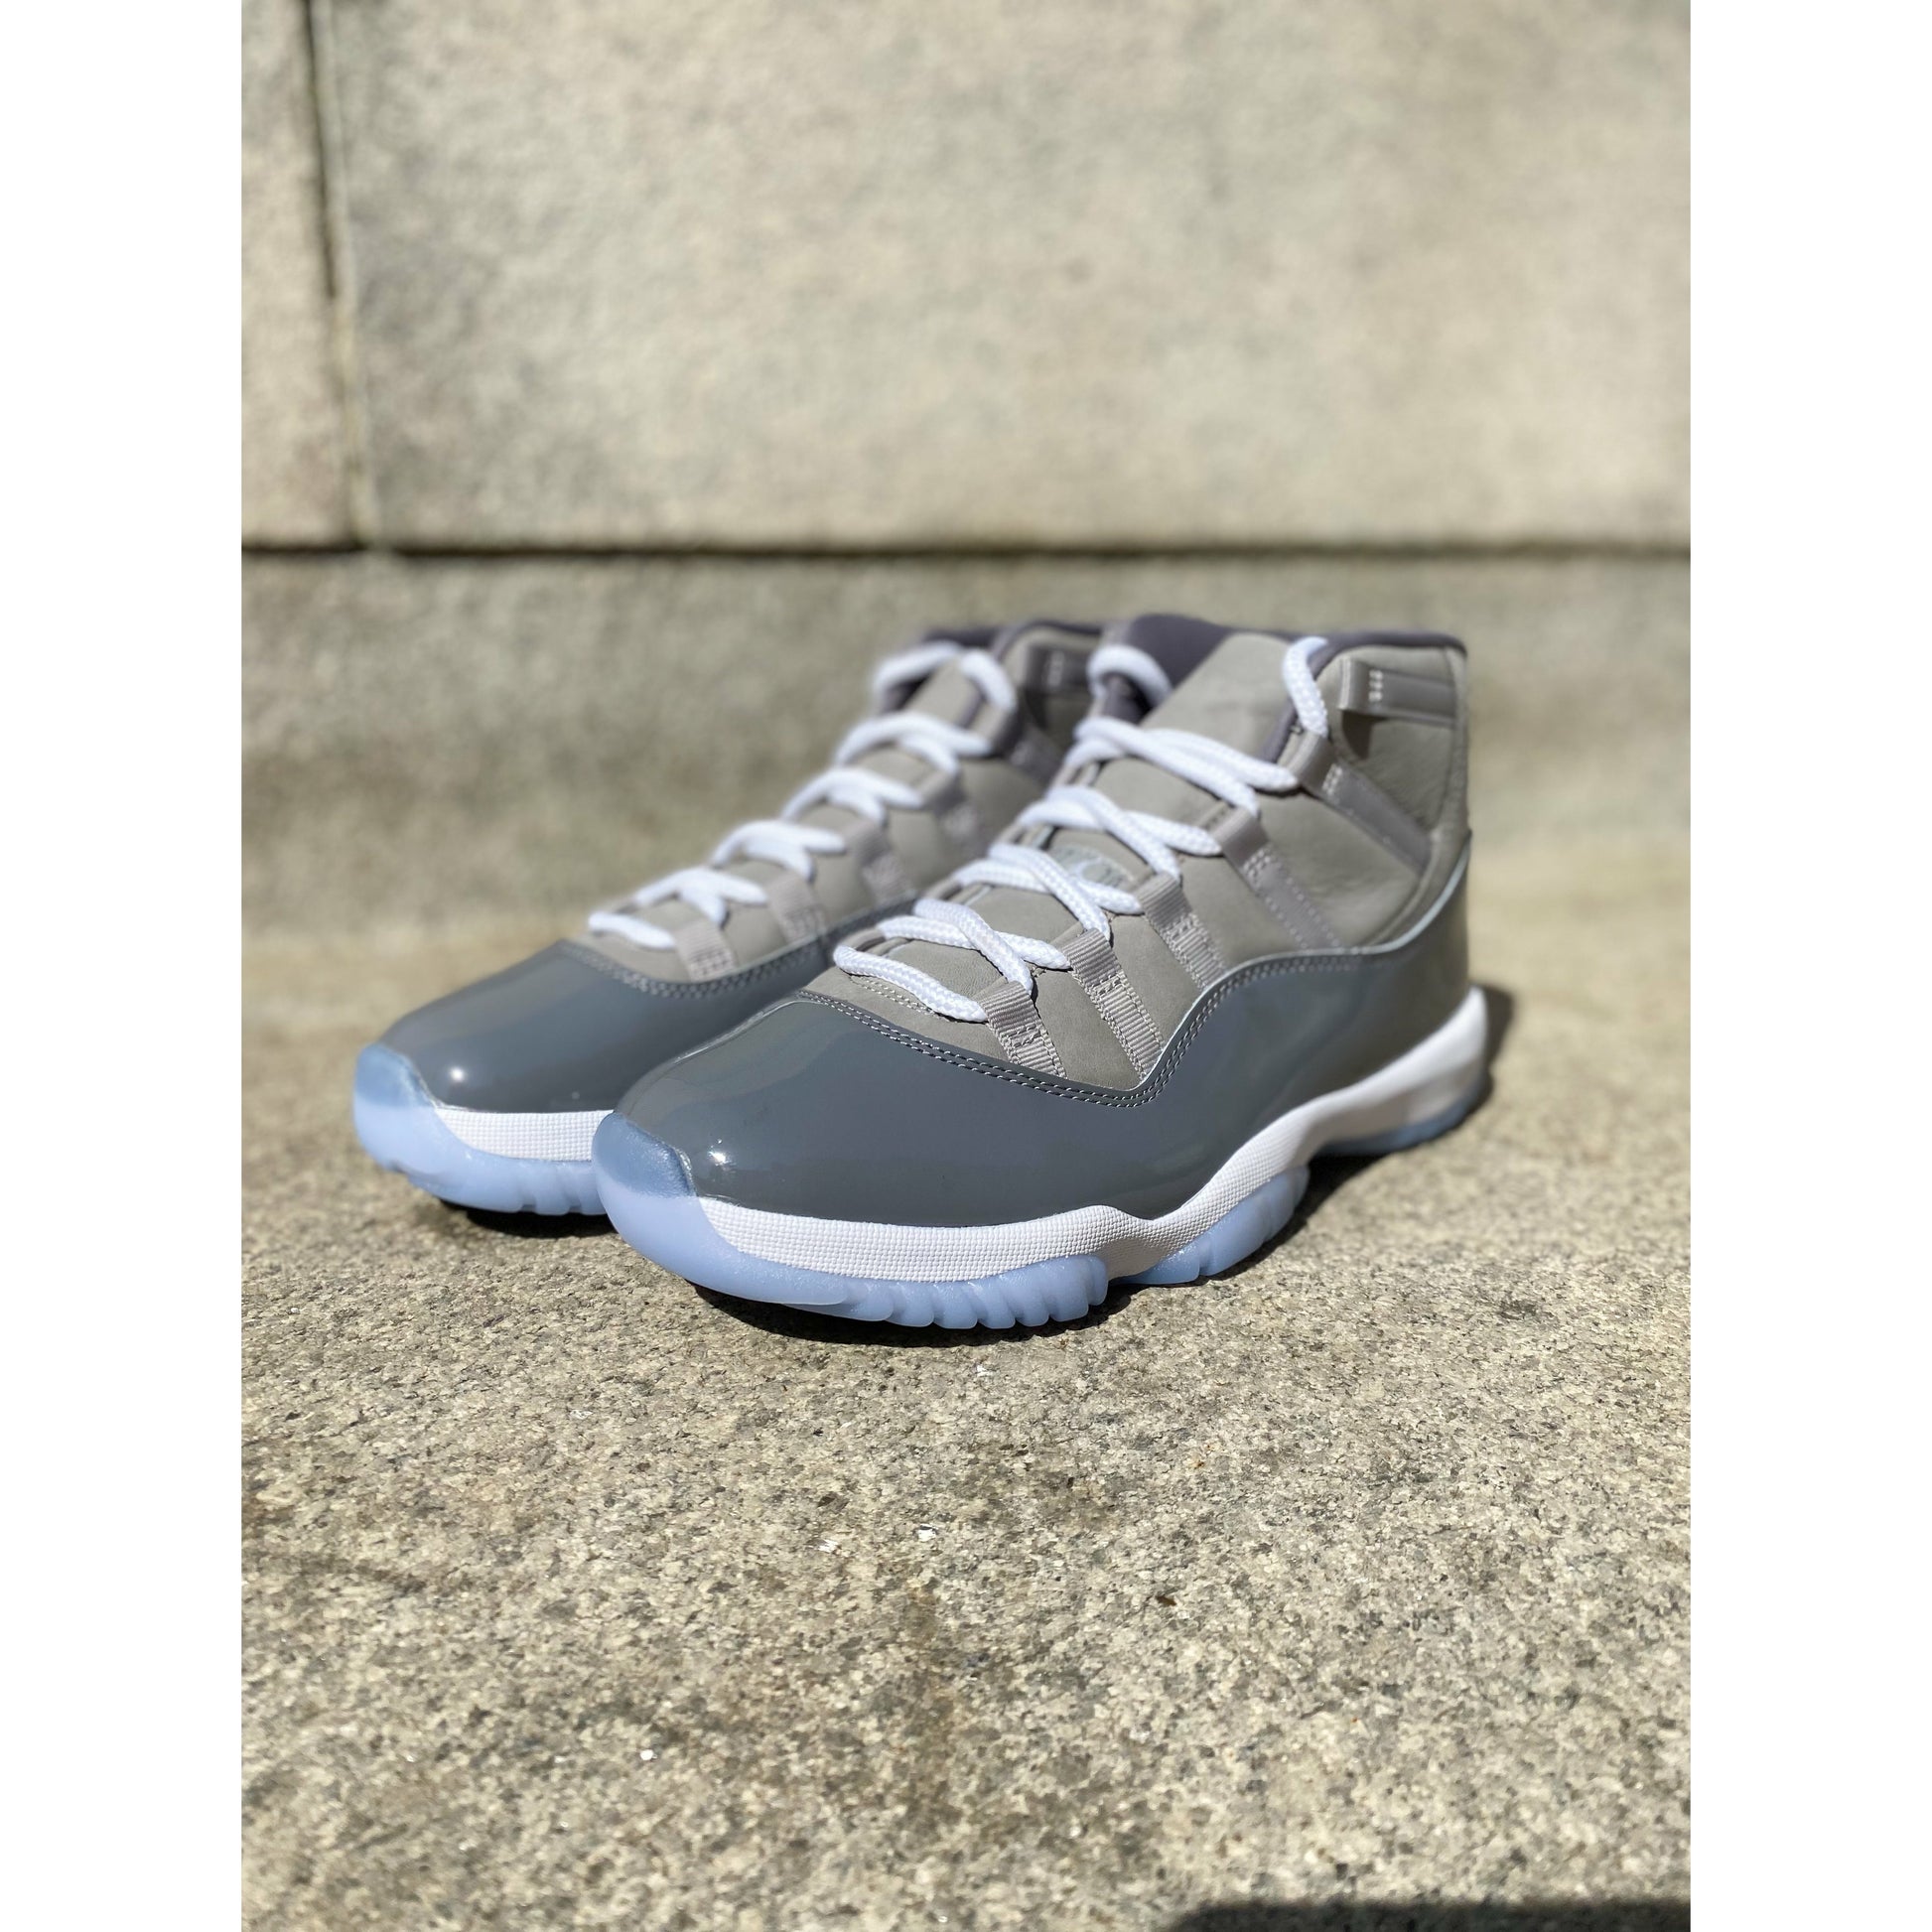 Jordan 11 Retro Cool Grey (2021) Men's - CT8012-005 - US